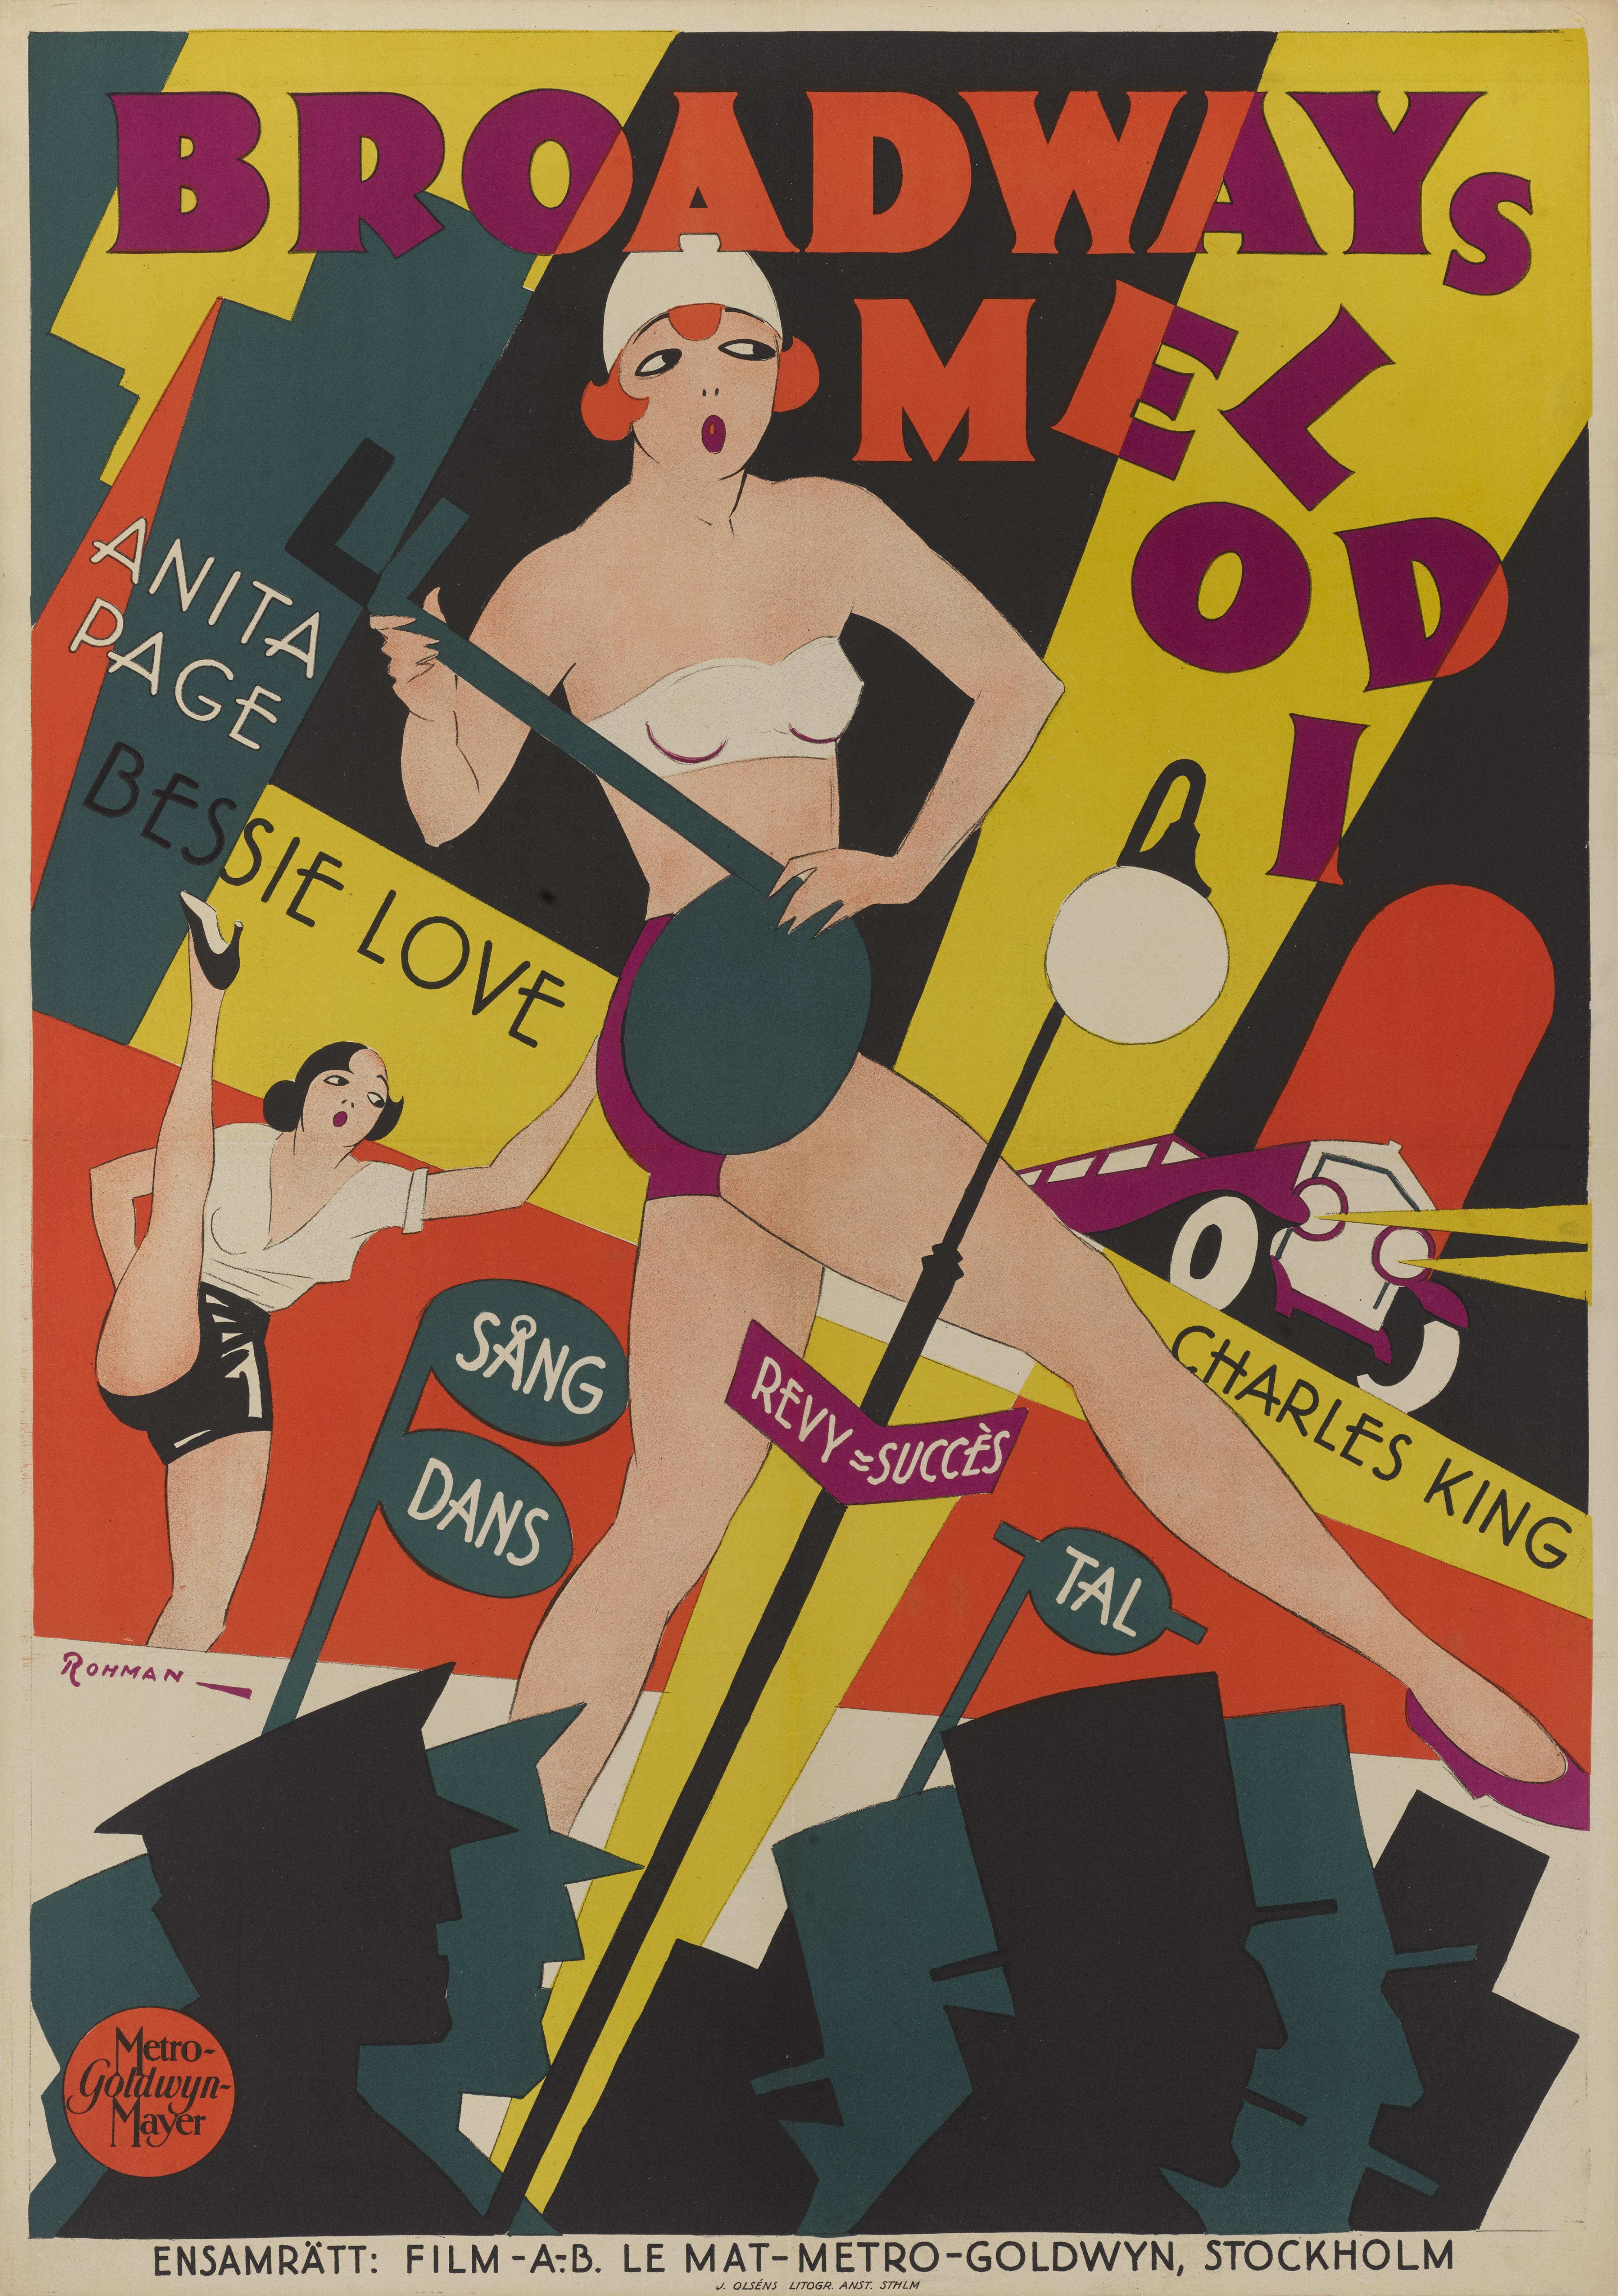 Originales schwedisches Filmplakat für The Broadway Melody 1929.
Die Regie bei diesem Film führte Harry Beaumont. Er erzählt die Geschichte von zwei Vaudeville-Schwestern, die versuchen, am Broadway Fuß zu fassen. Dies war das erste Musical von